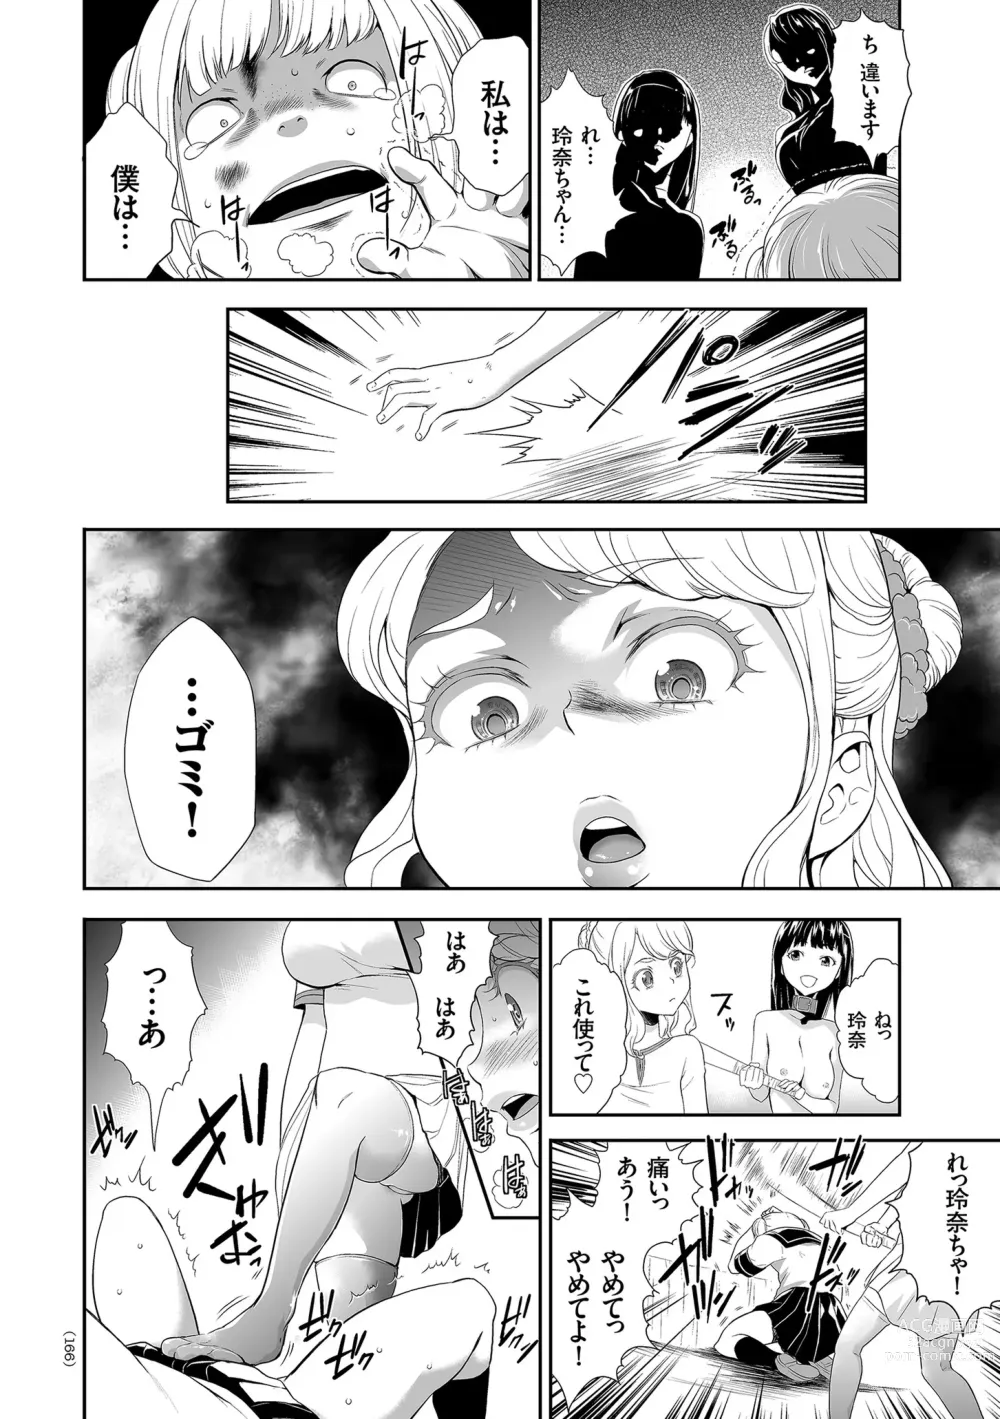 Page 166 of manga Idol Kankin Live!